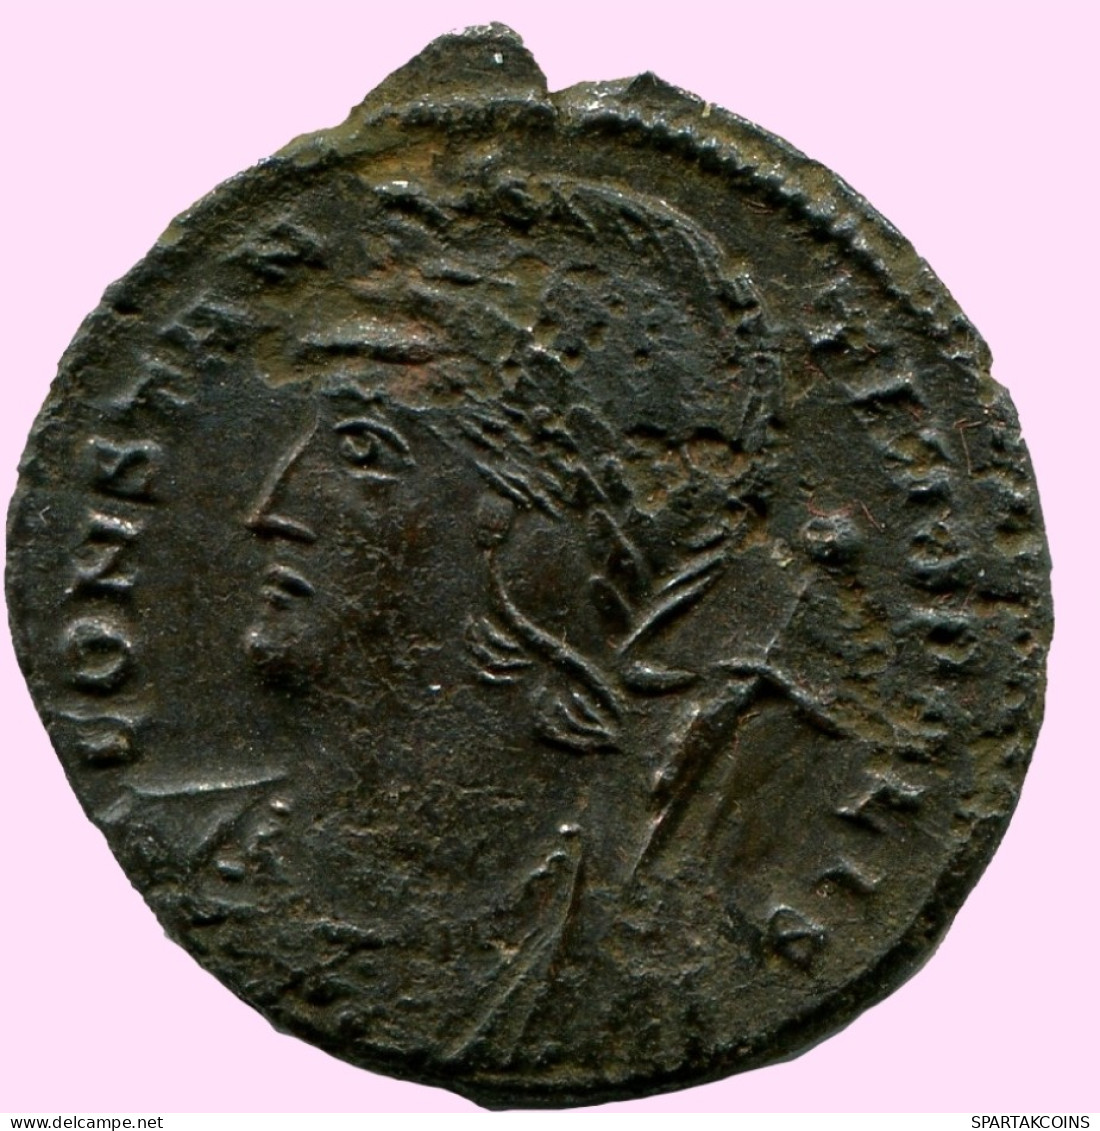 CONSTANTINUS I CONSTANTINOPOLI FOLLIS Romano ANTIGUO Moneda #ANC12070.25.E.A - El Impero Christiano (307 / 363)